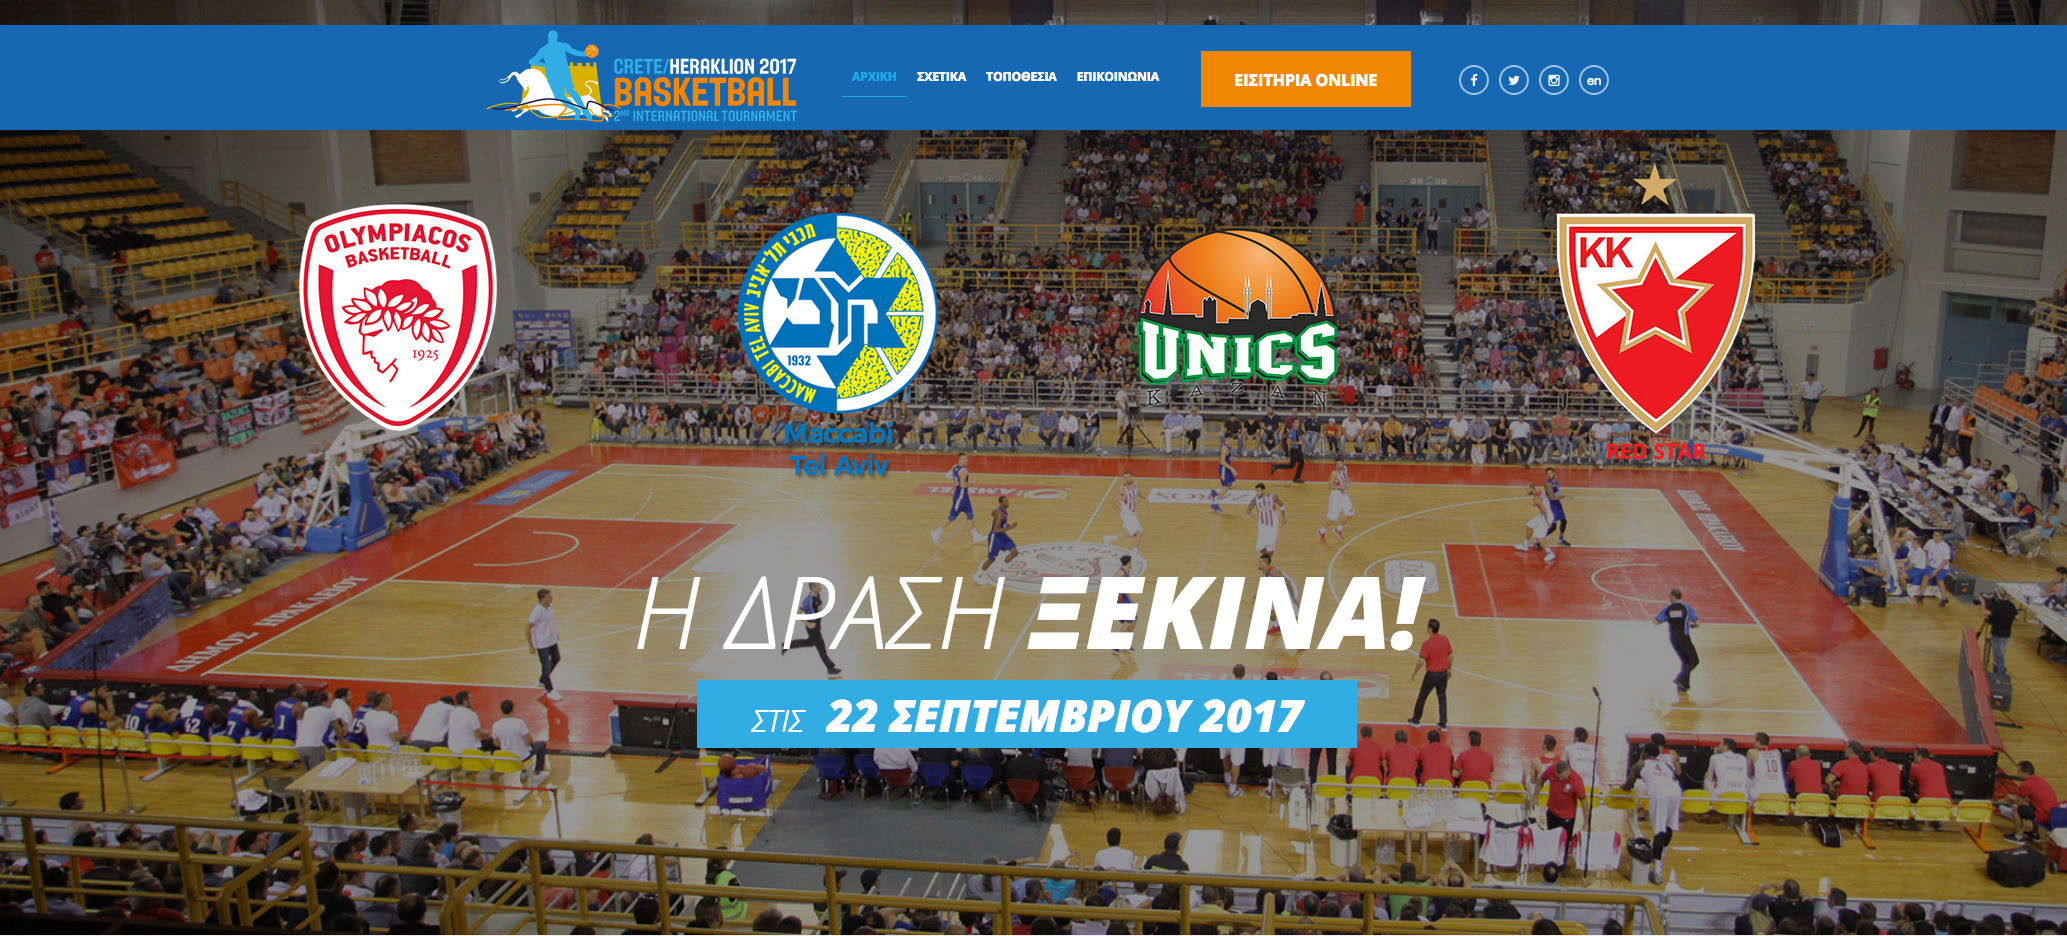 Ερχονται οι ομάδες για το 2ο  International Basketball Tournament Crete/Heraklion 